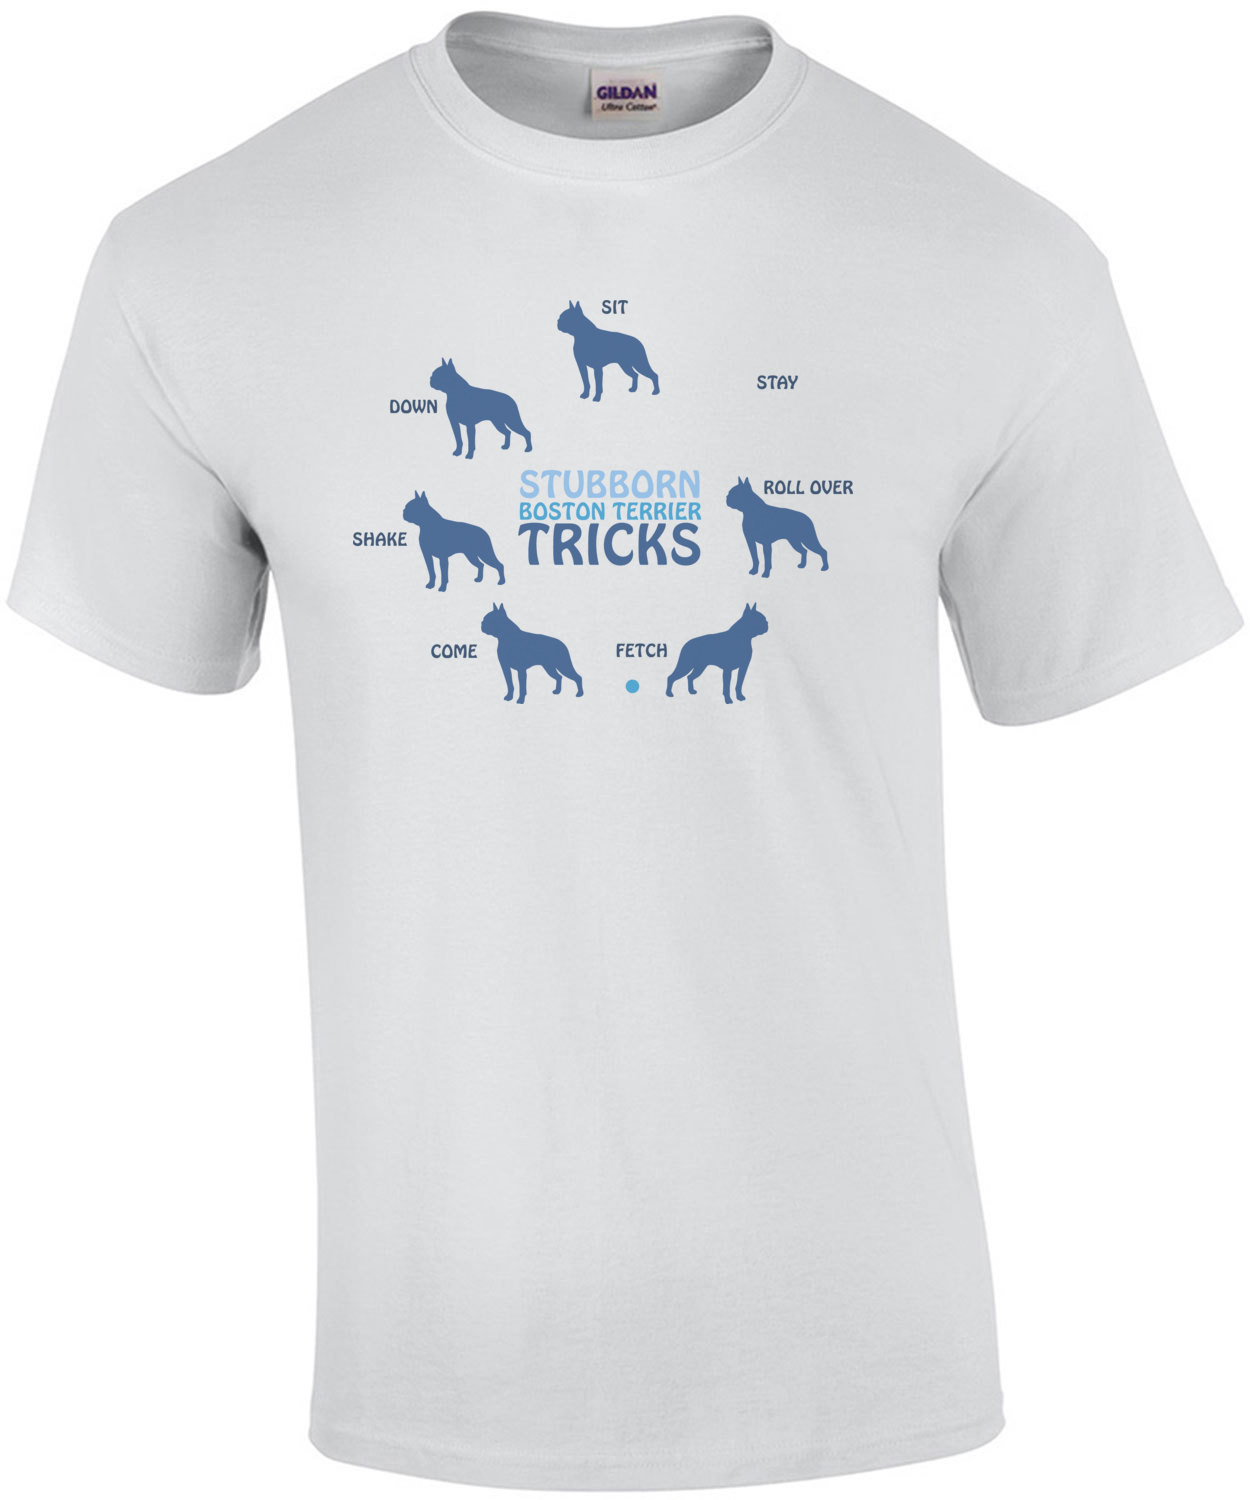 Stubborn Boston Terrier Tricks - Boston Terrier T-Shirt